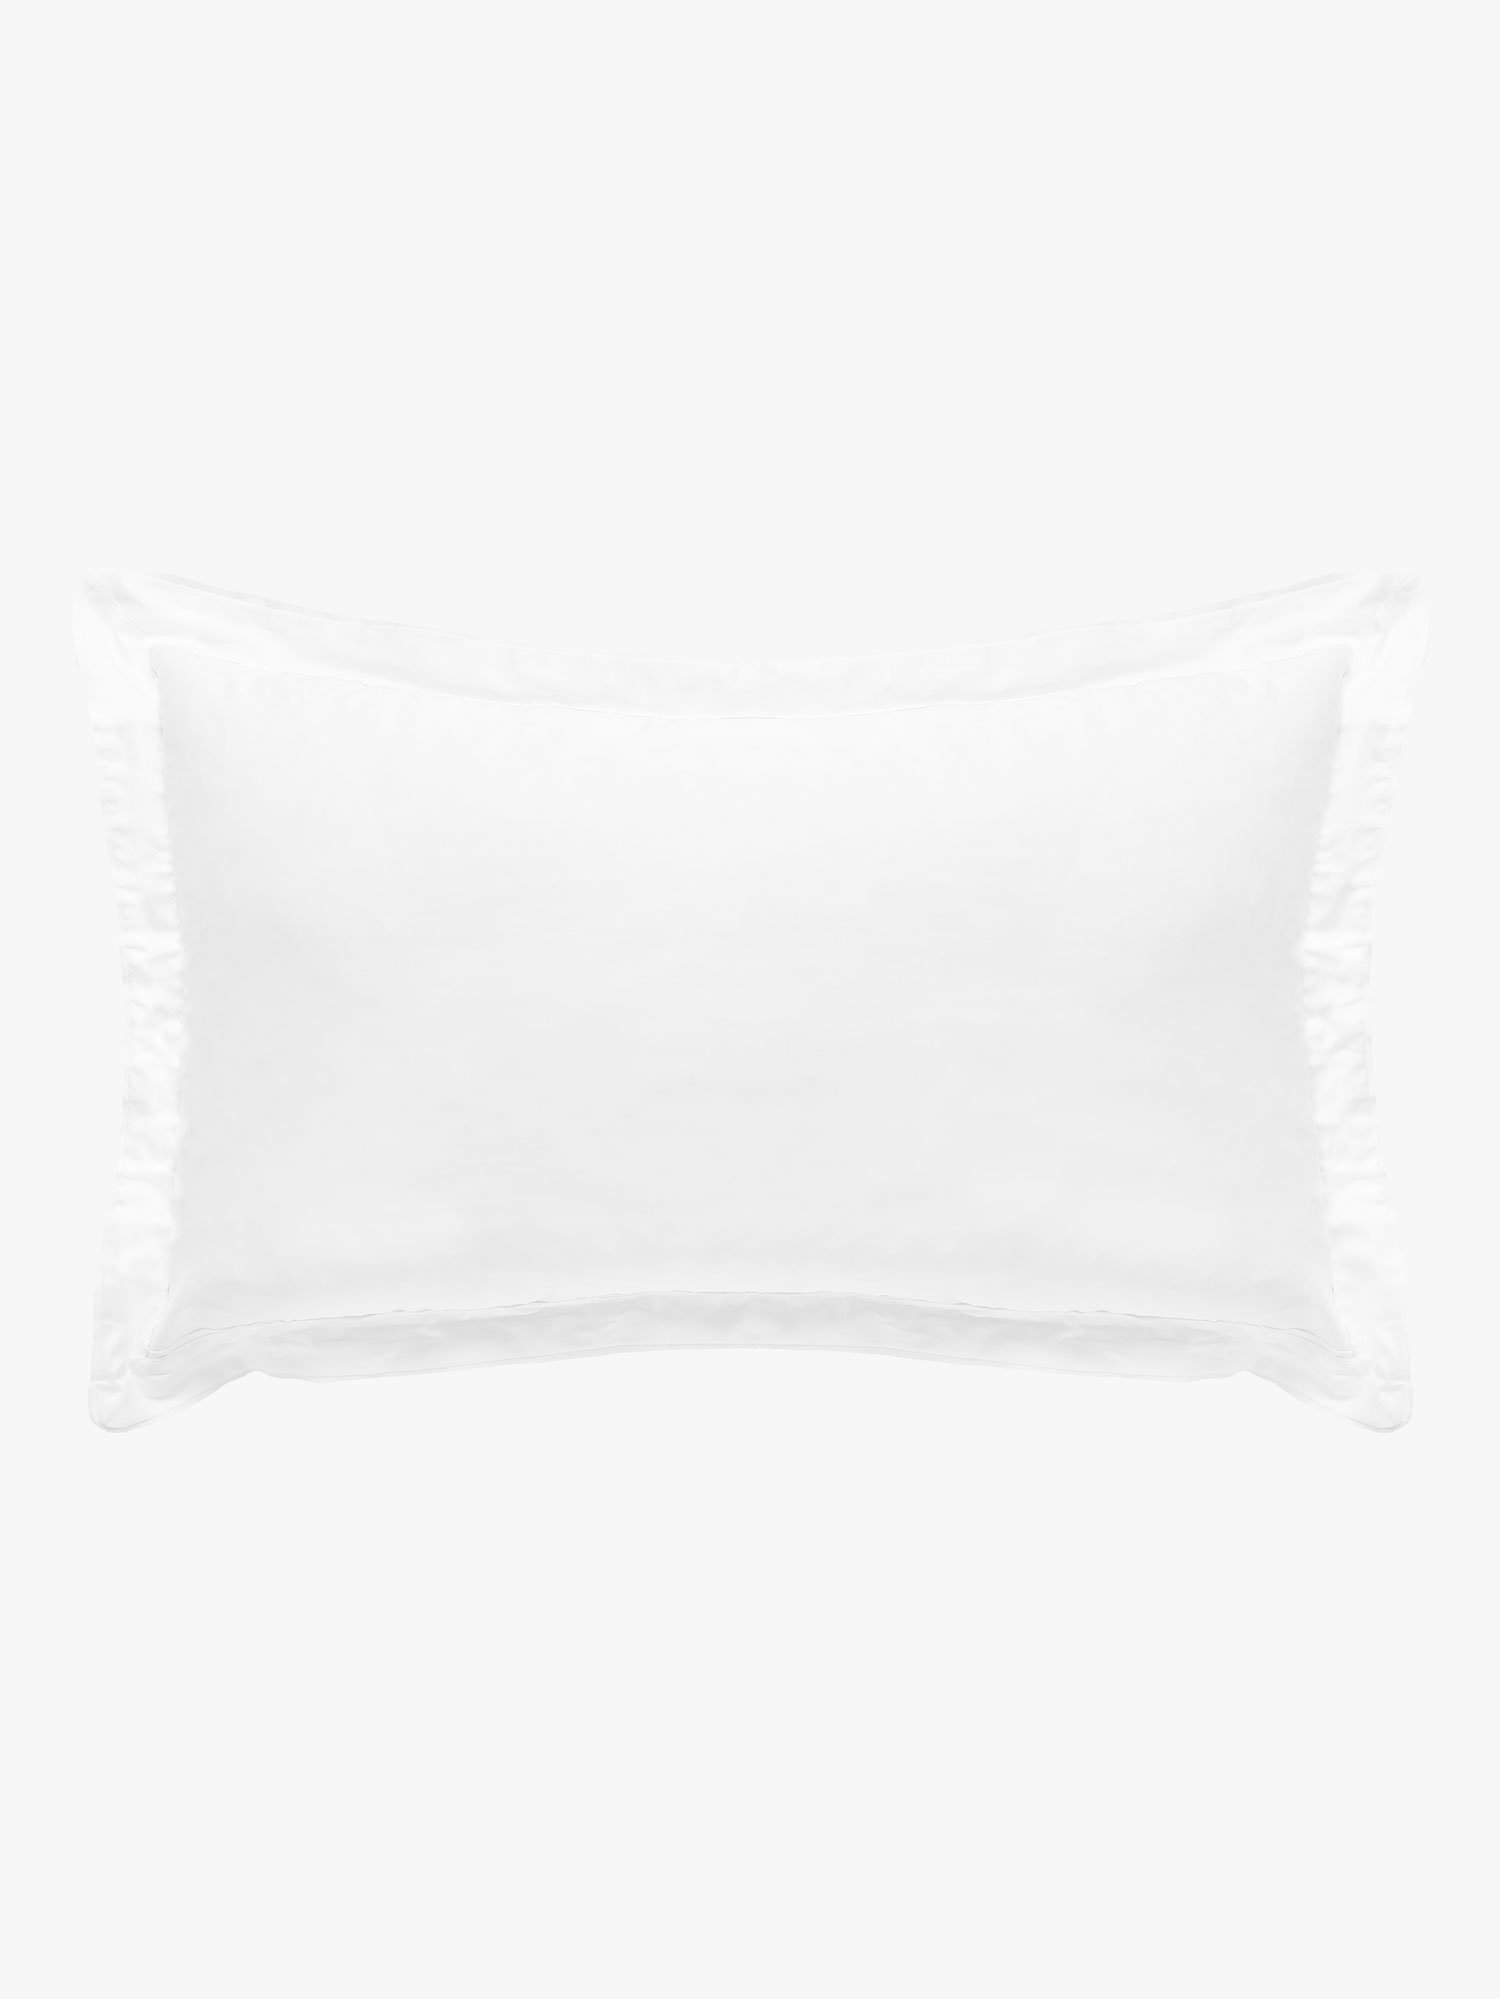 Grosgrain White Pillowcases Pillowcase L&M Home Tailored (Pair) 